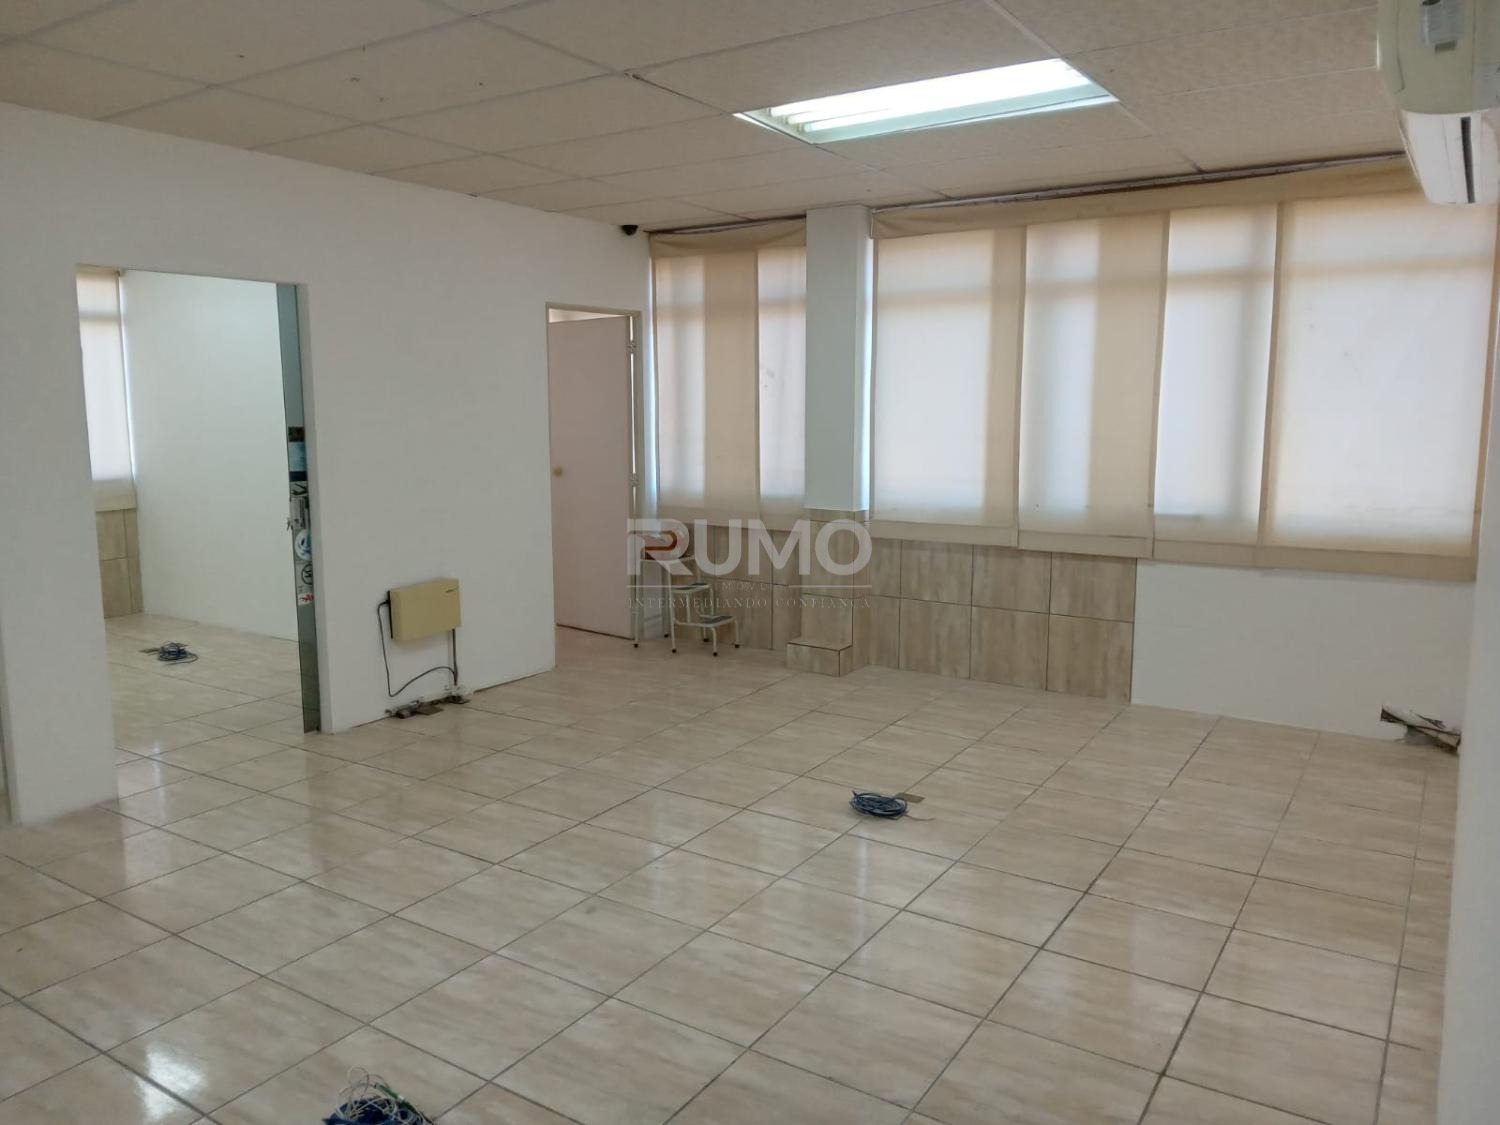 SA019502 | Sala aluguel Bosque | Campinas/SP